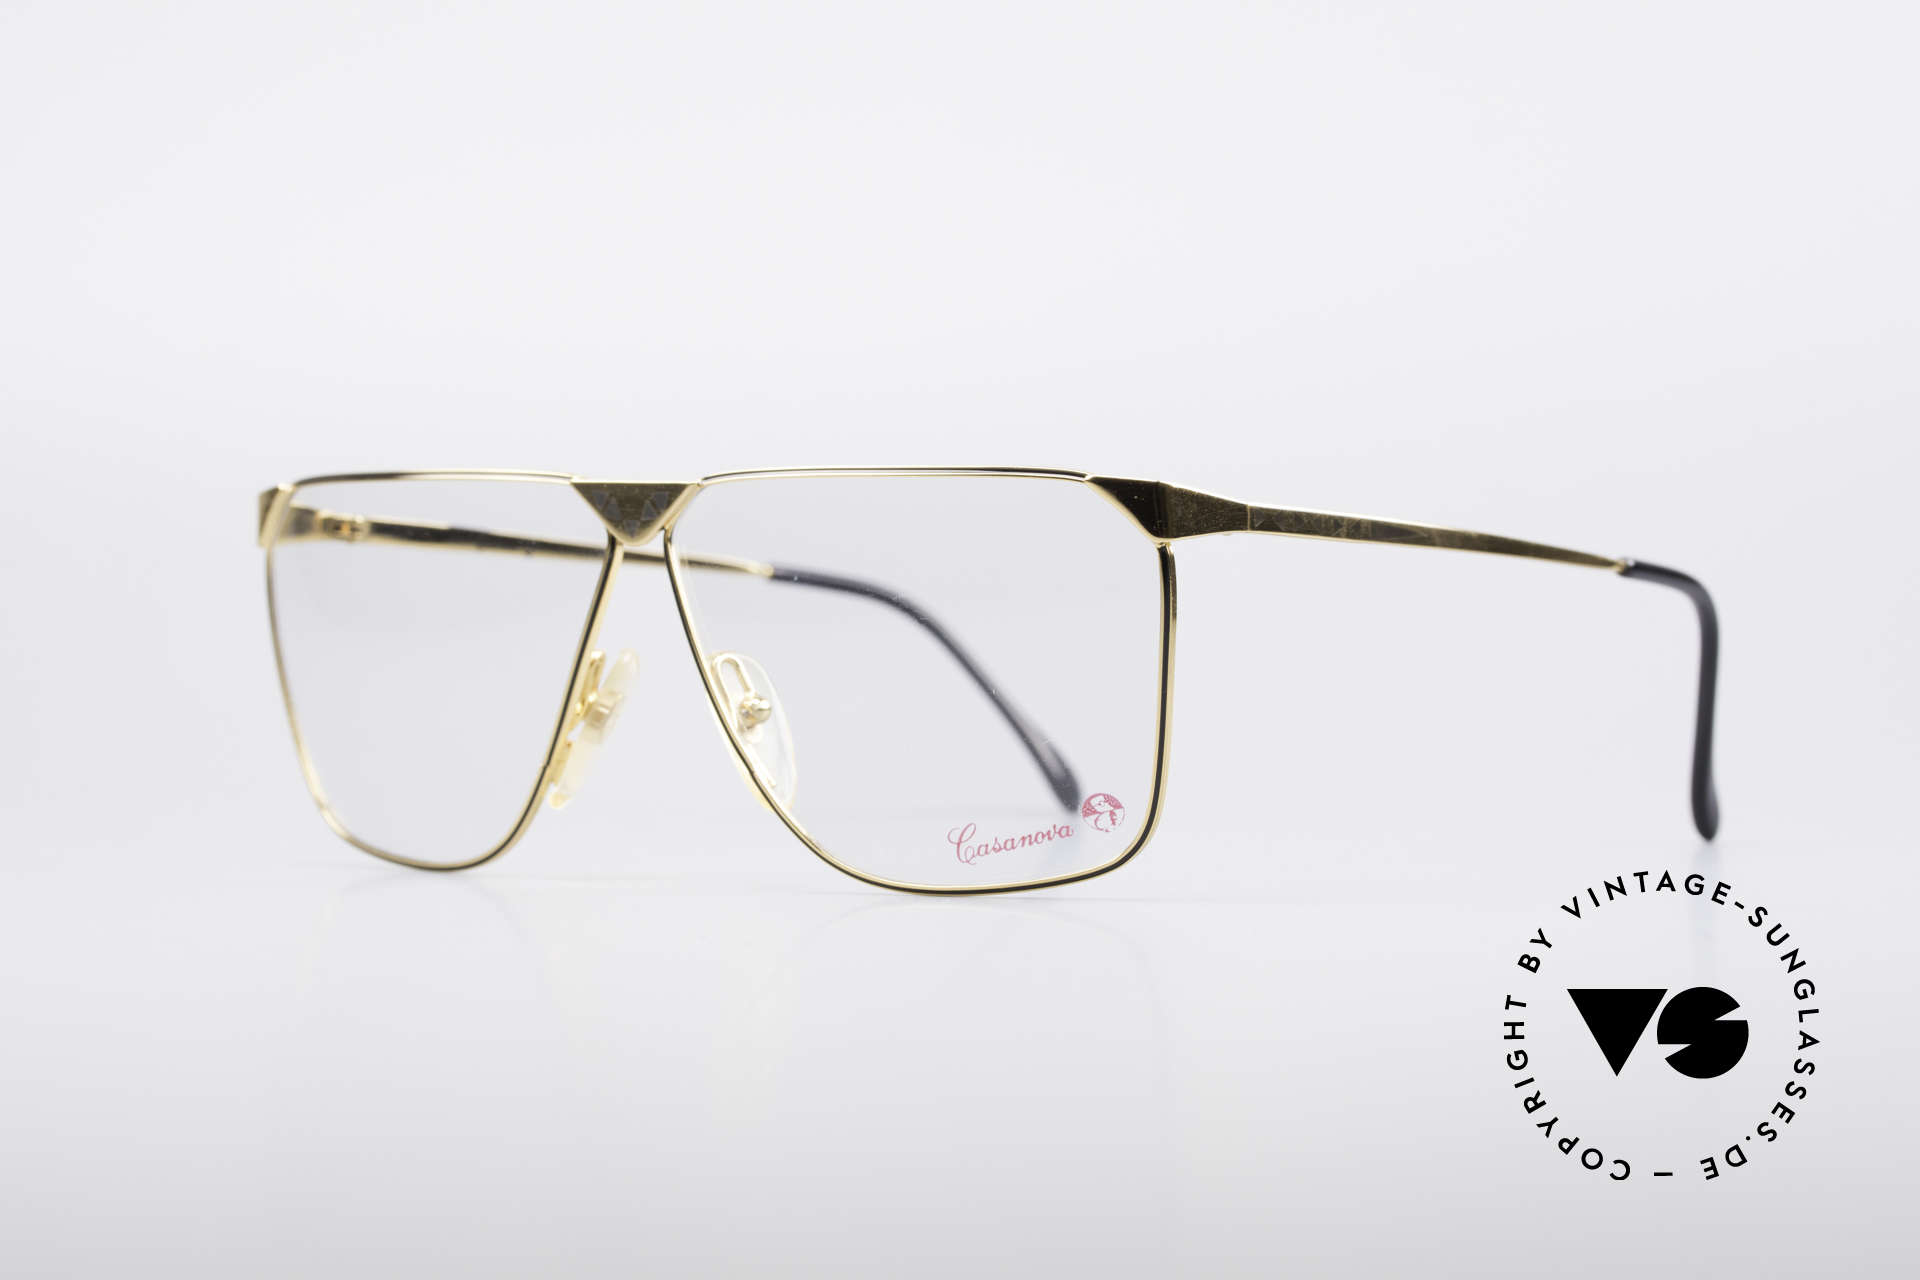 Casanova NM9 No Retro 80er Vintage Brille, vergoldete Metall-Fassung (damals selbstverständlich), Passend für Herren